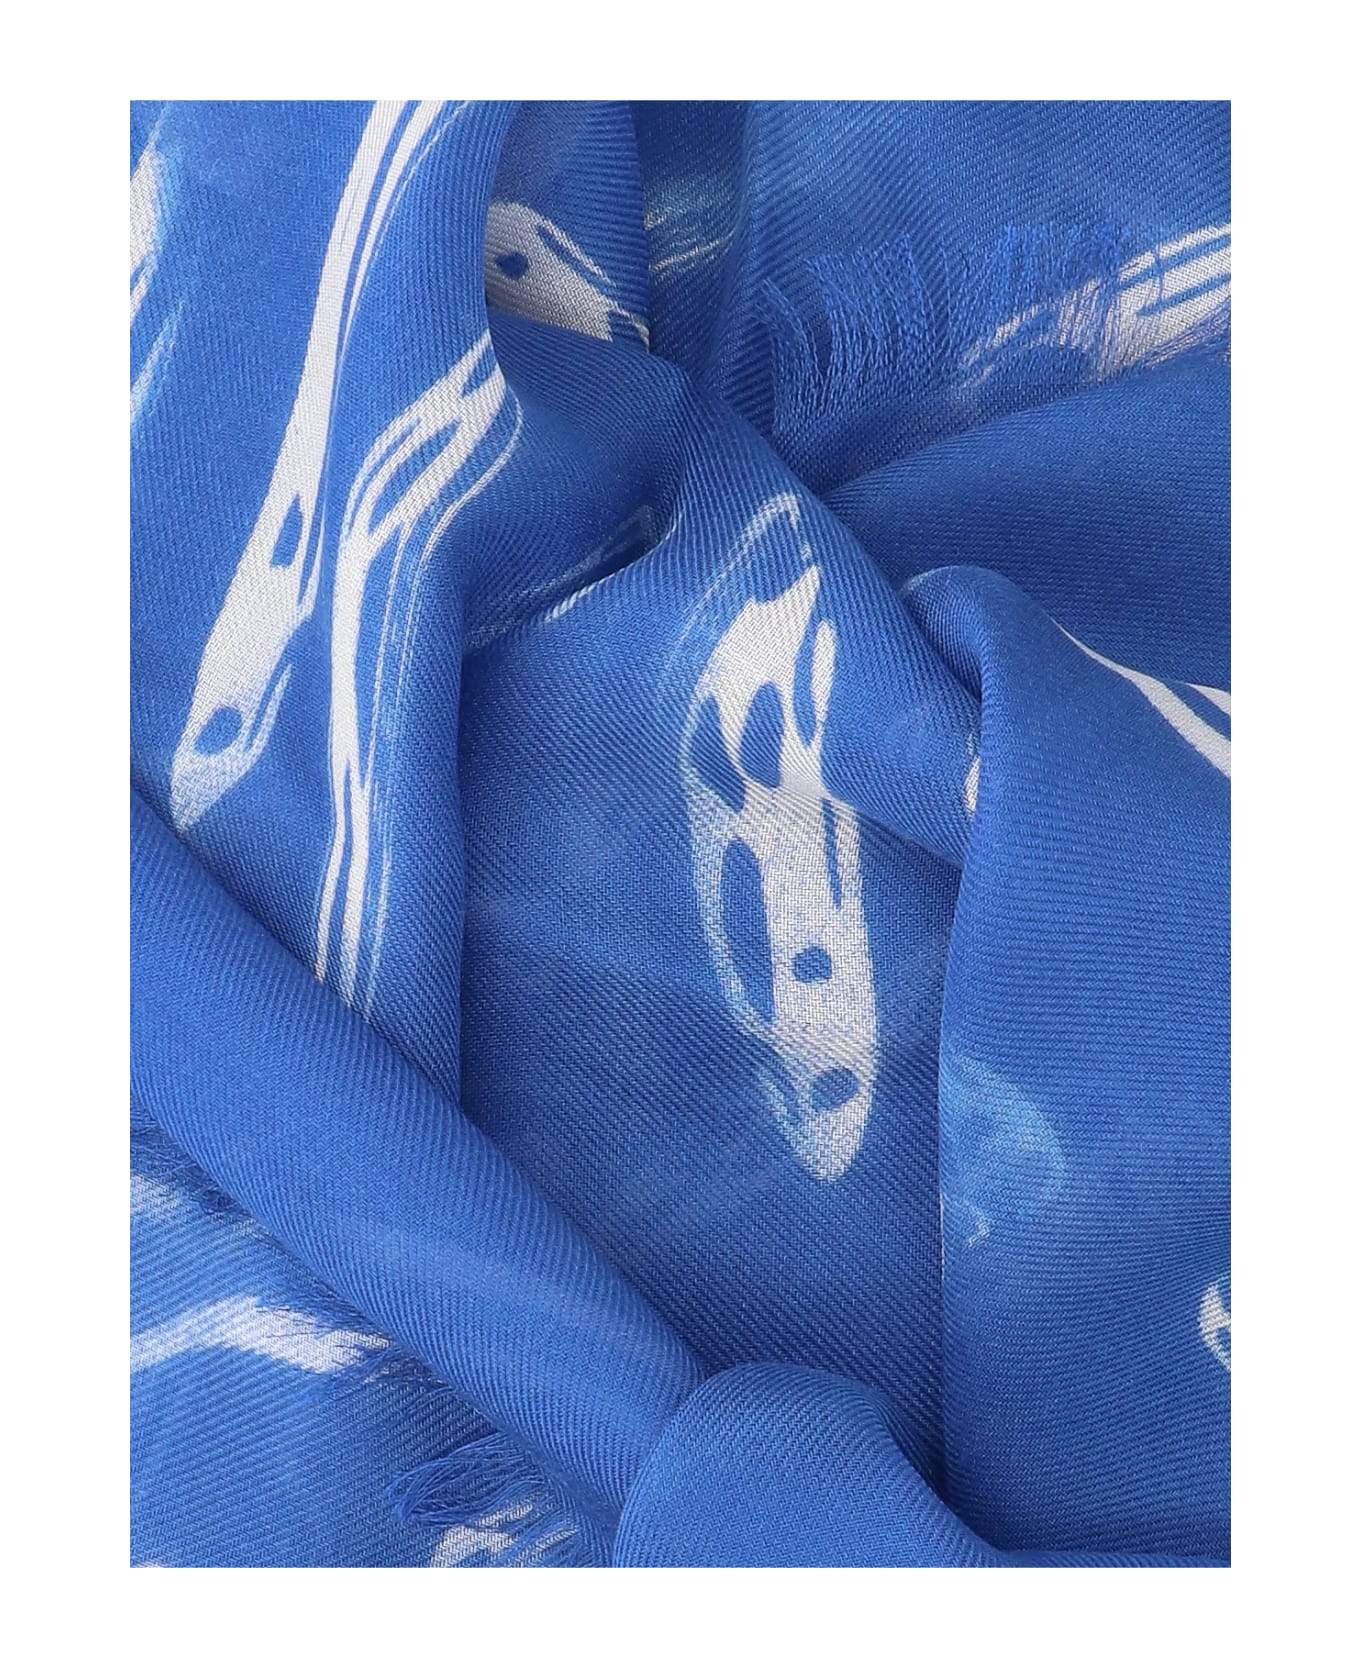 Alexander McQueen Skull Print Scarf - Blue スカーフ